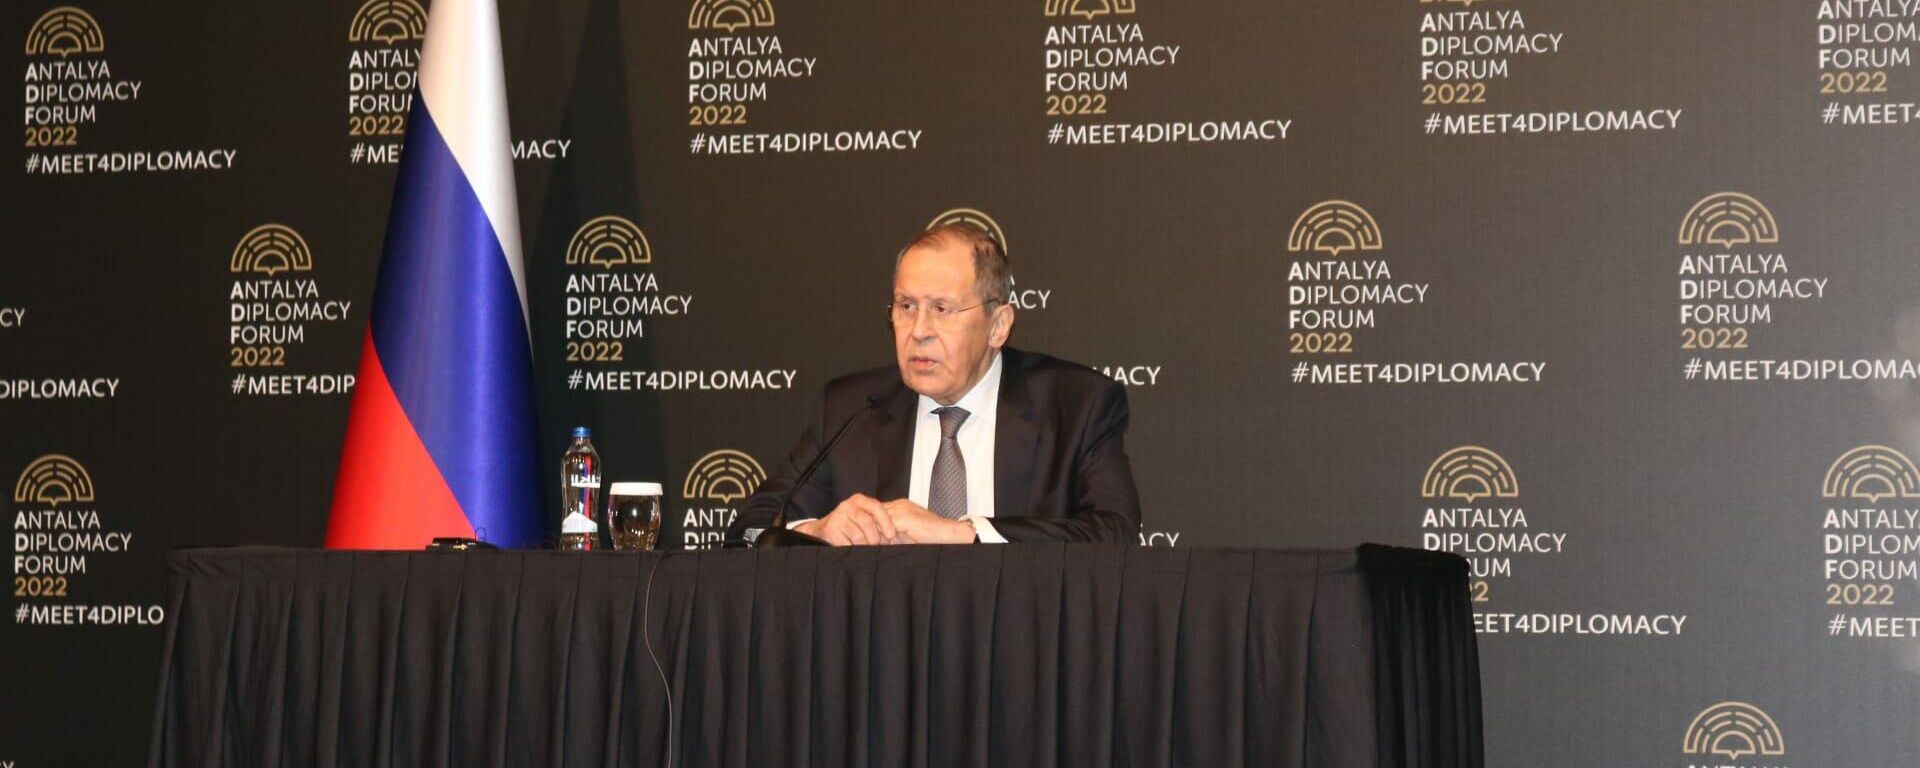 Chanceler russo, Sergei Lavrov, durante coletiva de imprensa após negociações com seu homólogo ucraniano Dmitry Kuleba em Antália, Turquia  - Sputnik Brasil, 1920, 10.03.2022